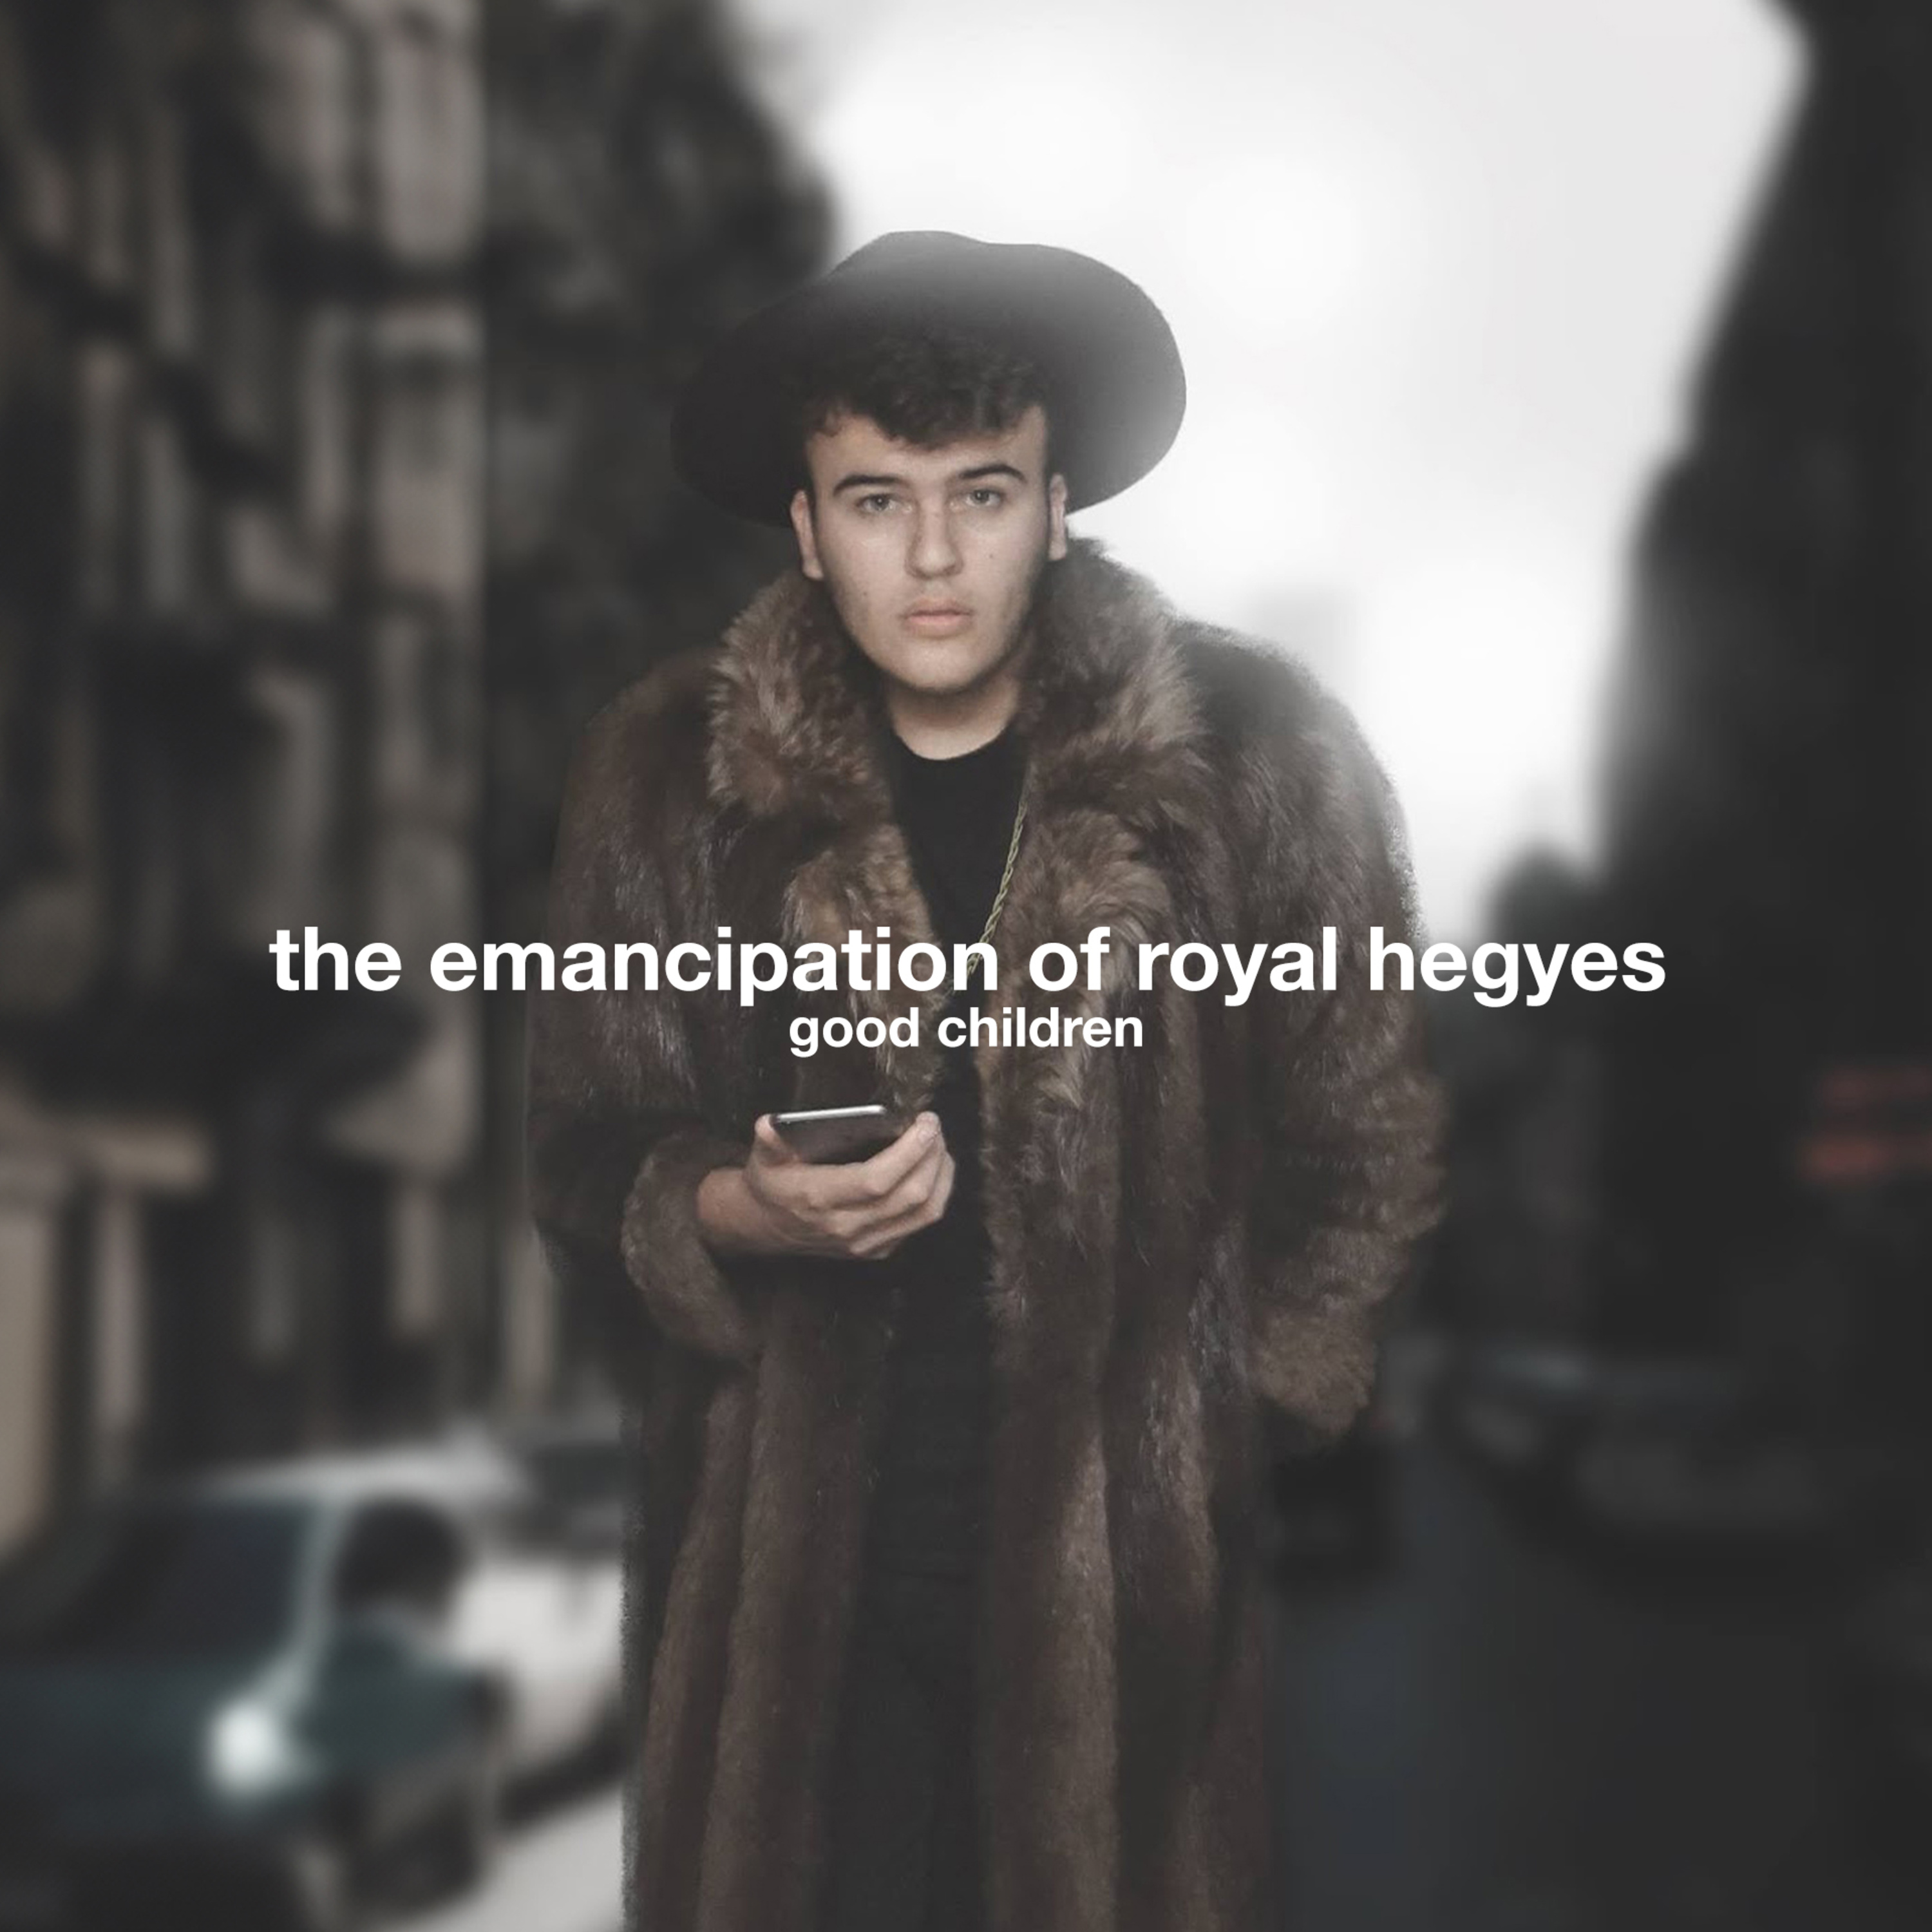 The Emancipation of Royal Hegyes